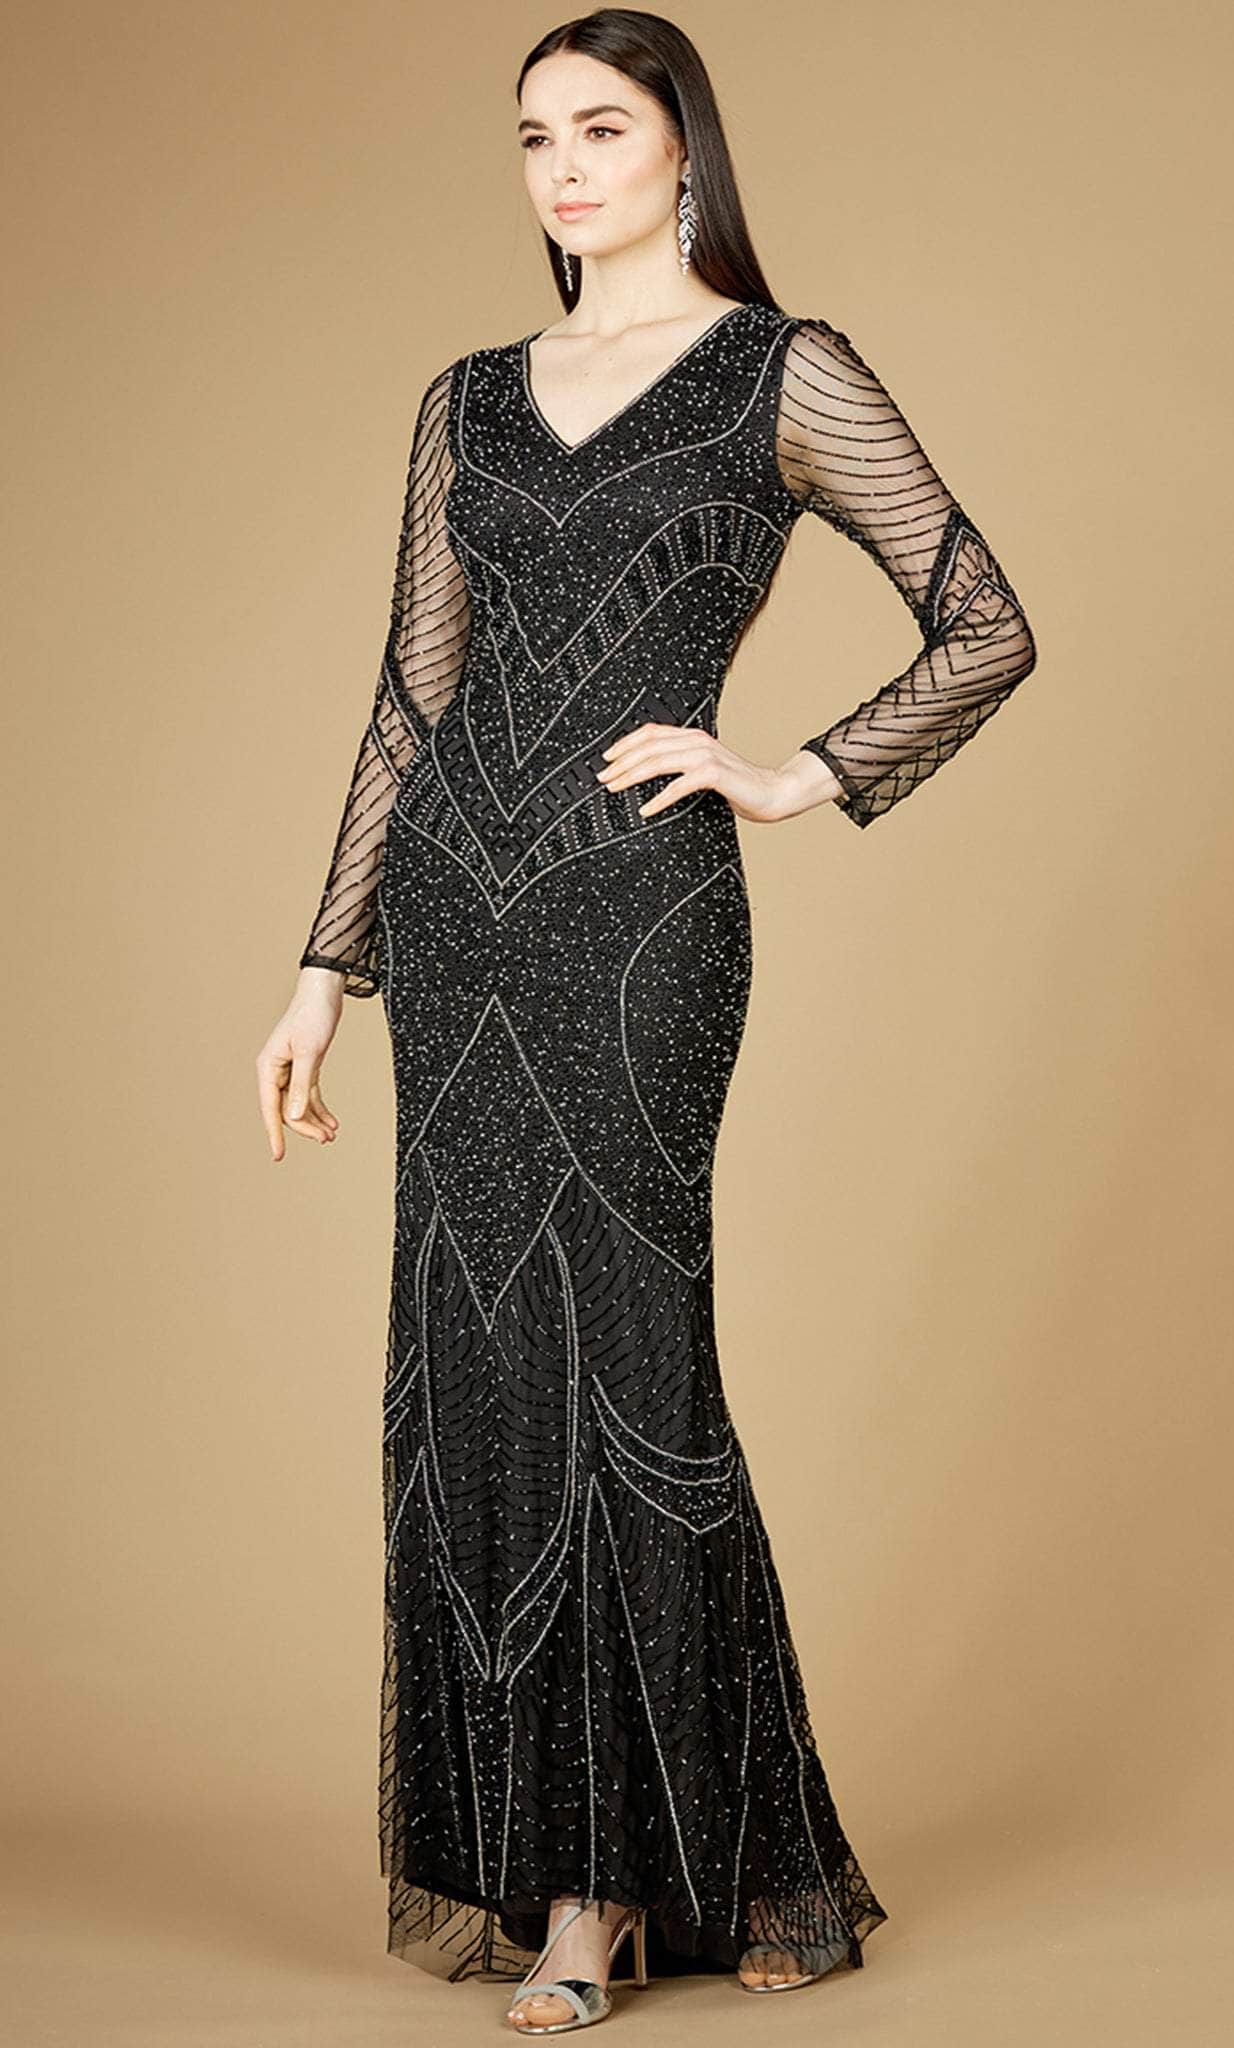 Image of Lara Dresses 29173 - Long Sleeve Embellished Evening Dress